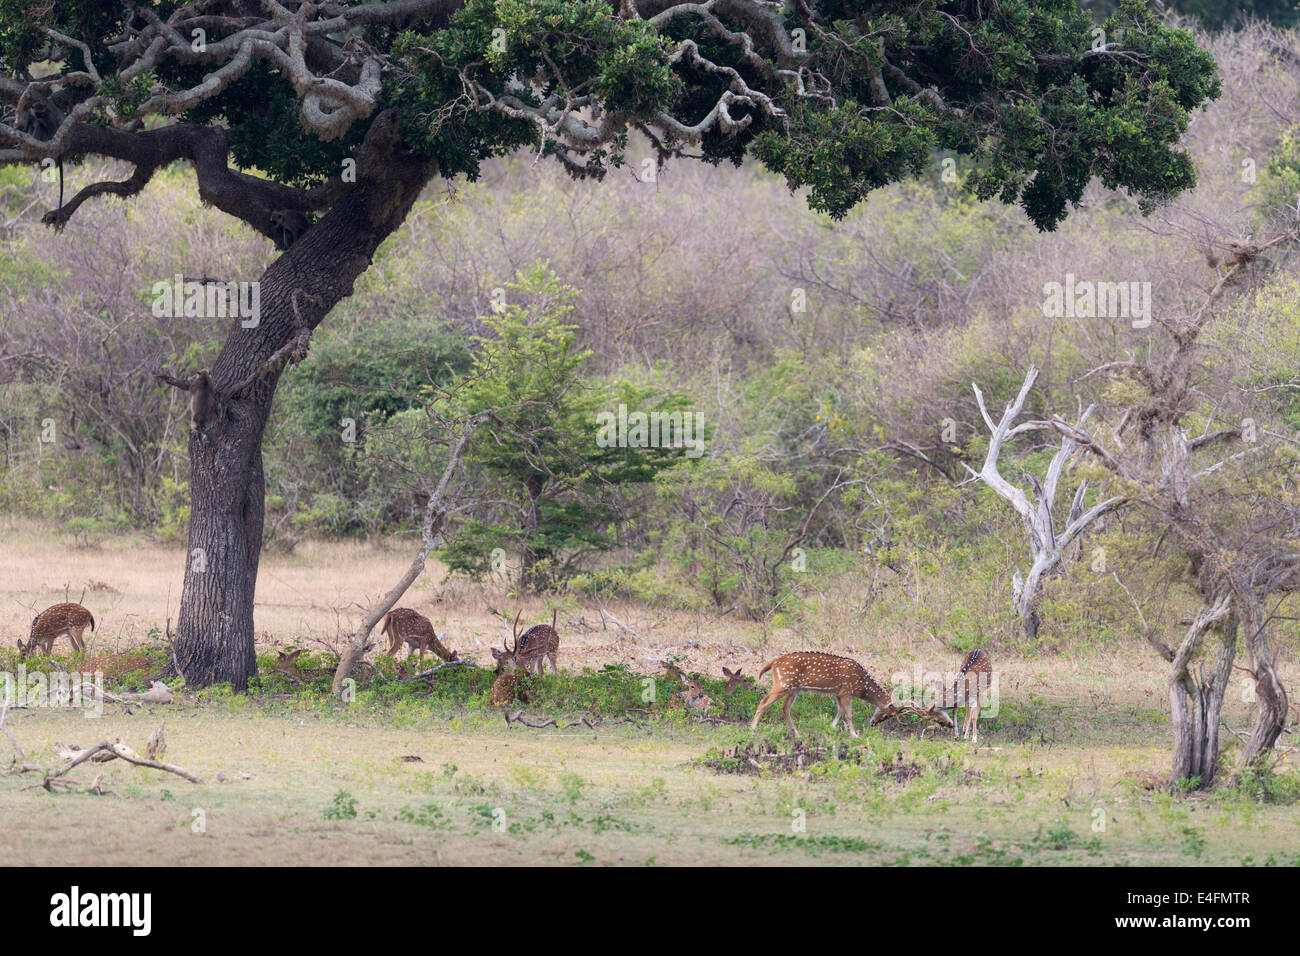 Un troupeau de cerfs communs repèrés à l'ombre d'un grand arbre. Deux d'entre eux sont des combats. Banque D'Images